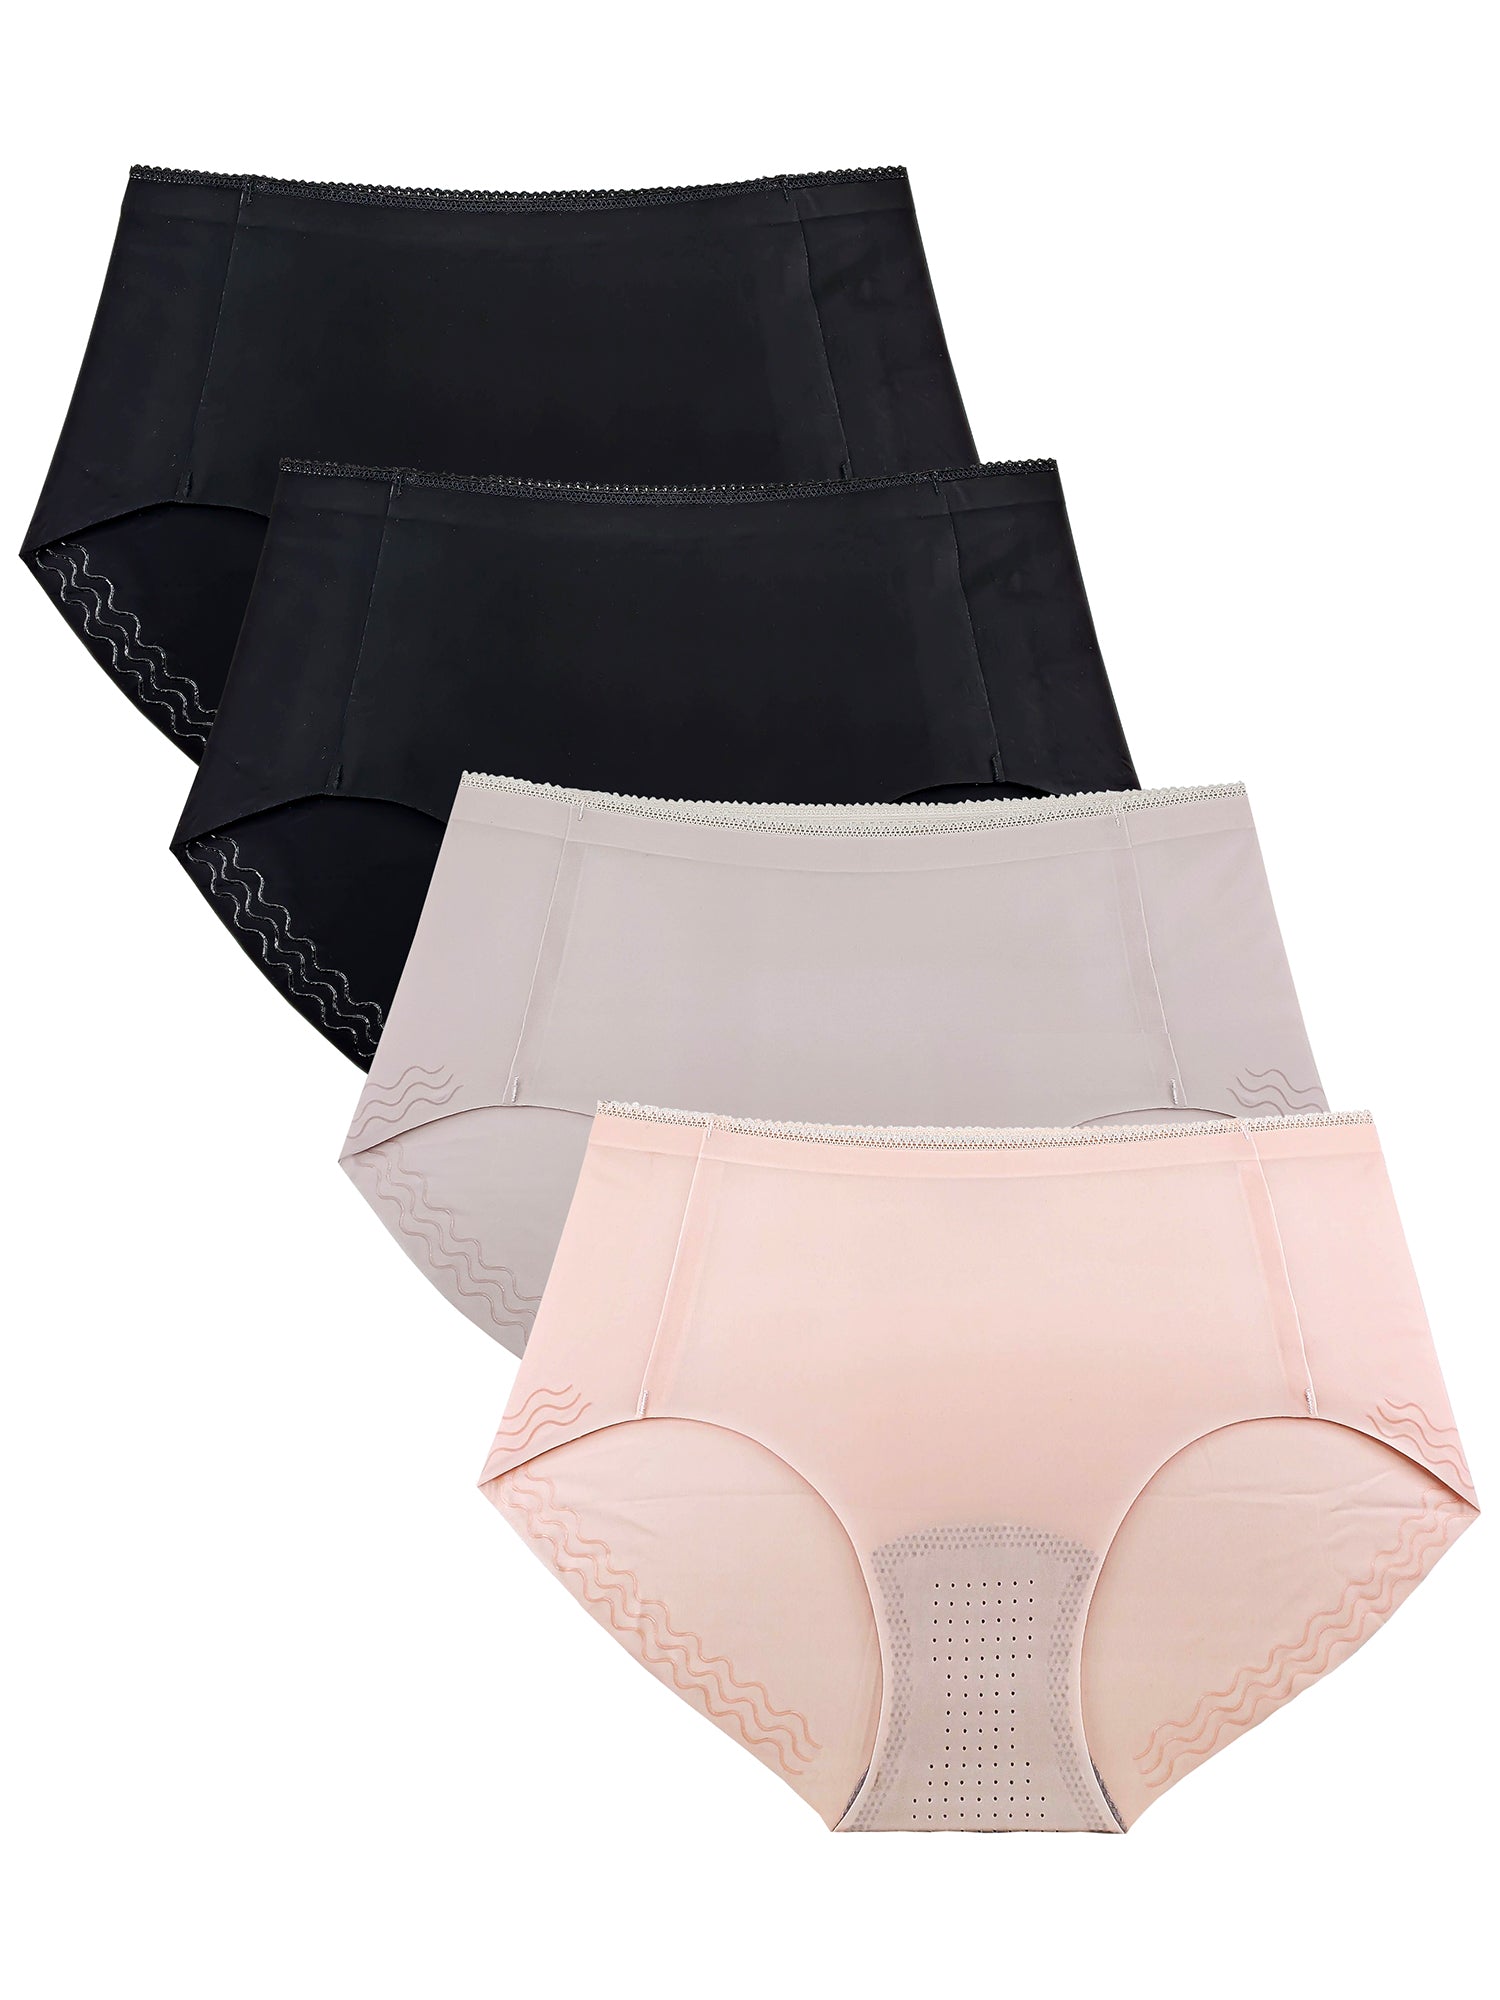 3 Pack Women's Ultra Soft High Waist Bamboo Modal Underwear Panties